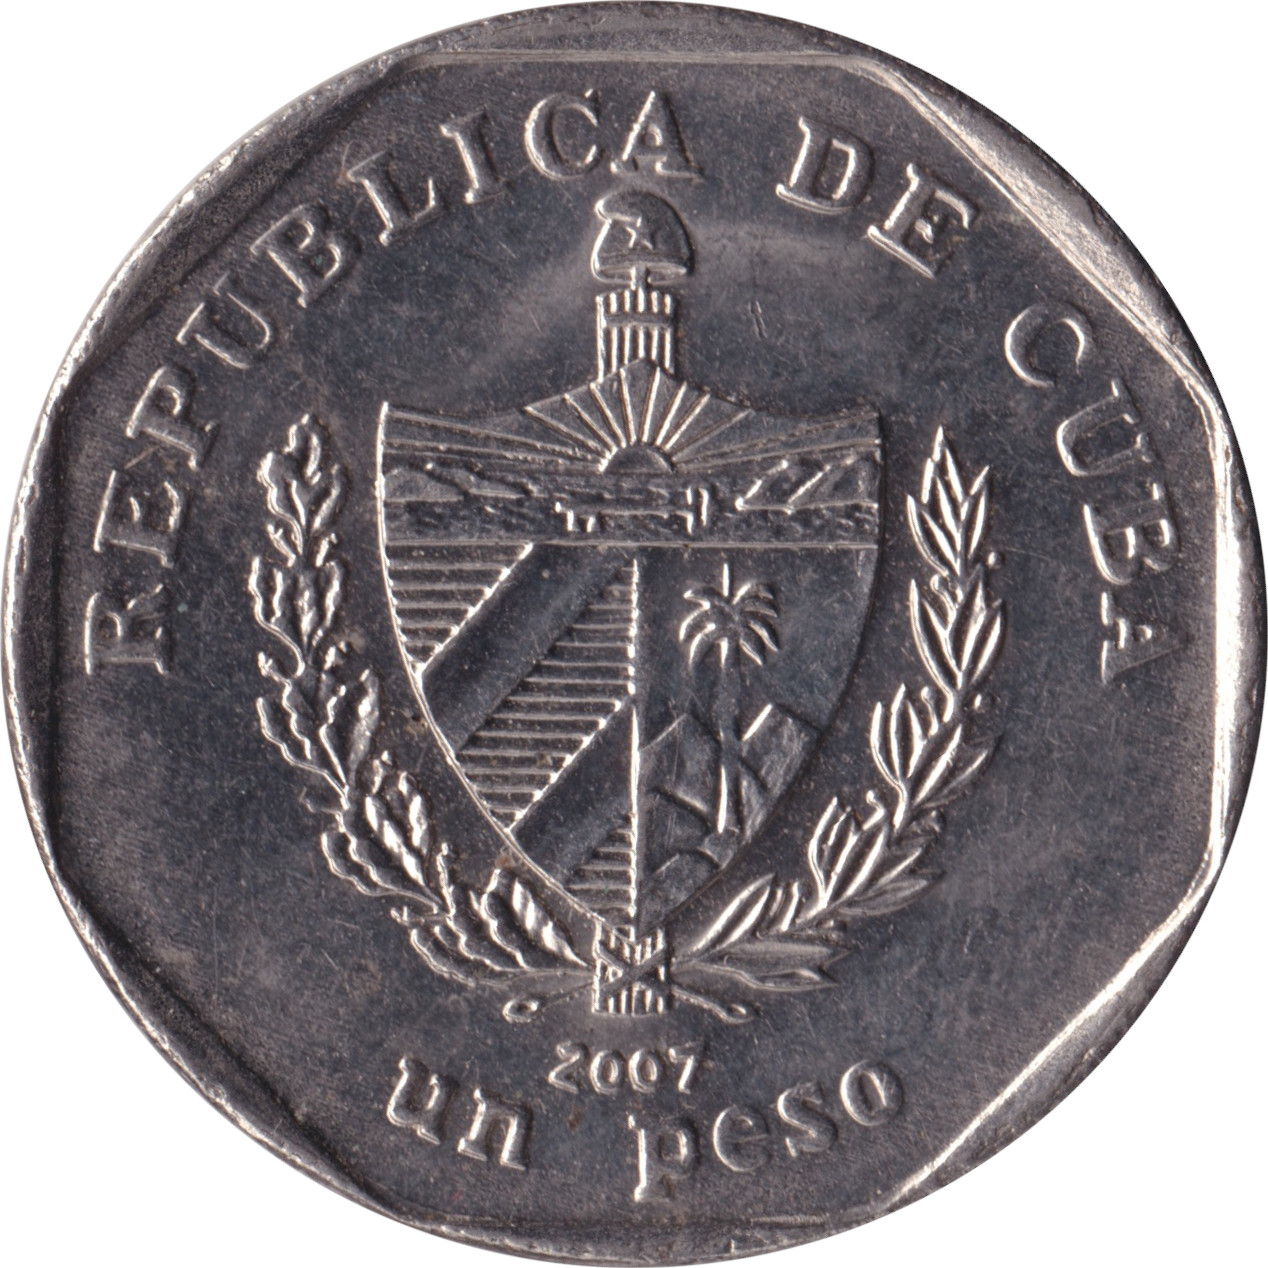 1 peso - Guama